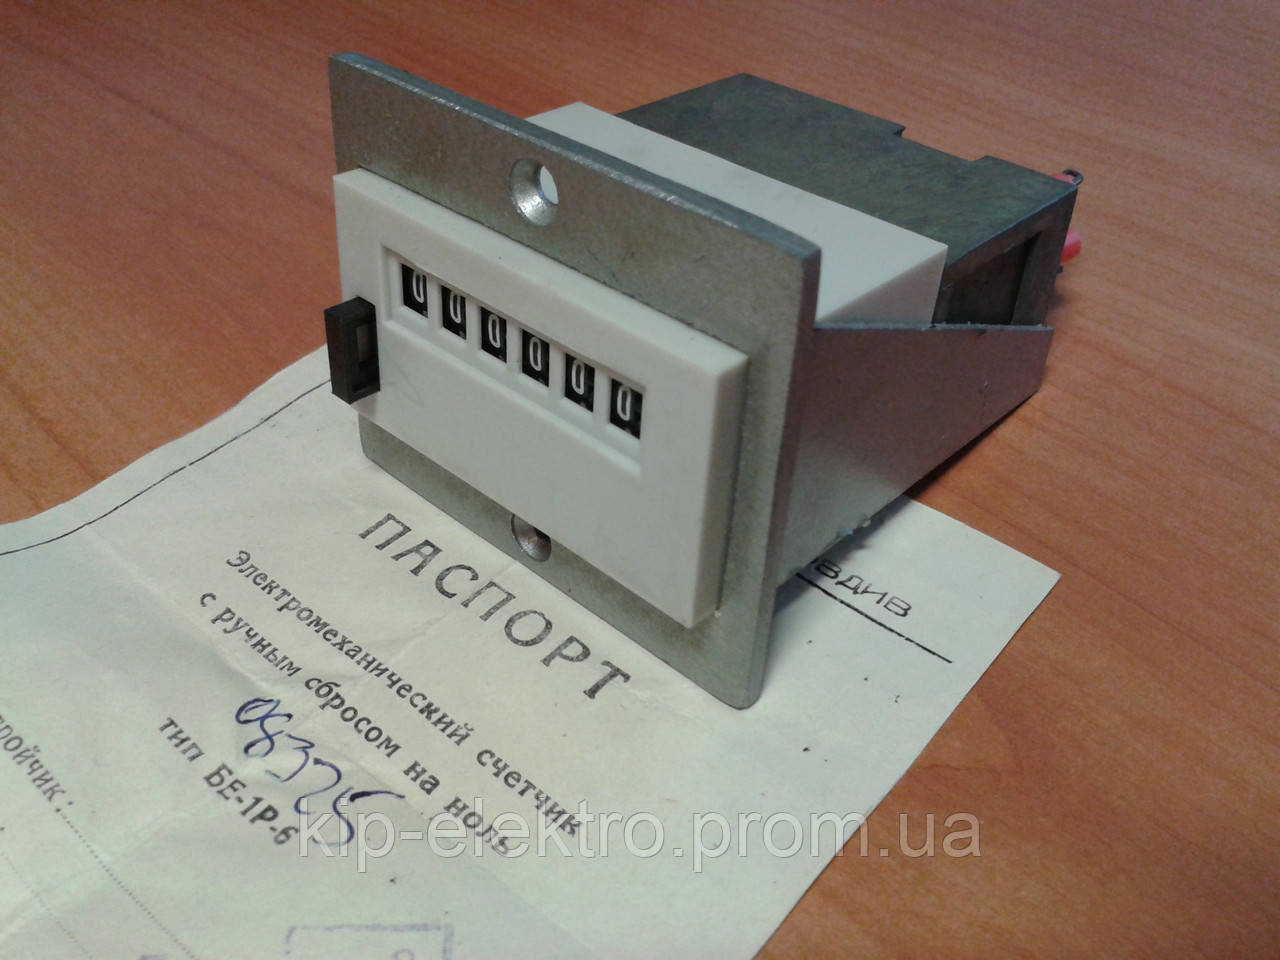 Лічильник імпульсів БЕ-1Р-6 (- 24В) з кнопкою скидання (аналог СІ-206, СИ-206)